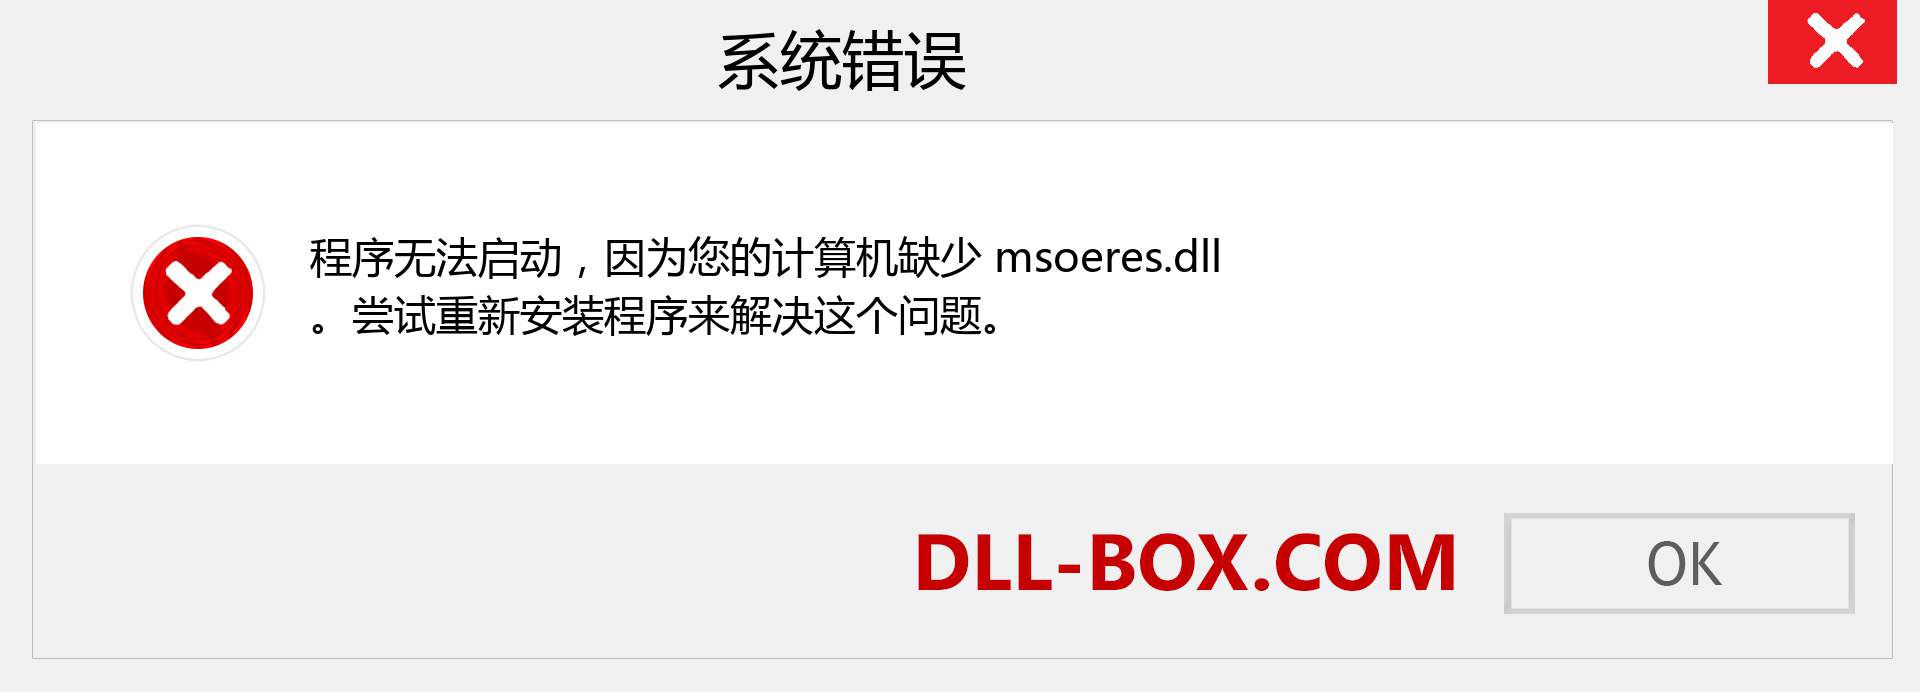 msoeres.dll 文件丢失？。 适用于 Windows 7、8、10 的下载 - 修复 Windows、照片、图像上的 msoeres dll 丢失错误